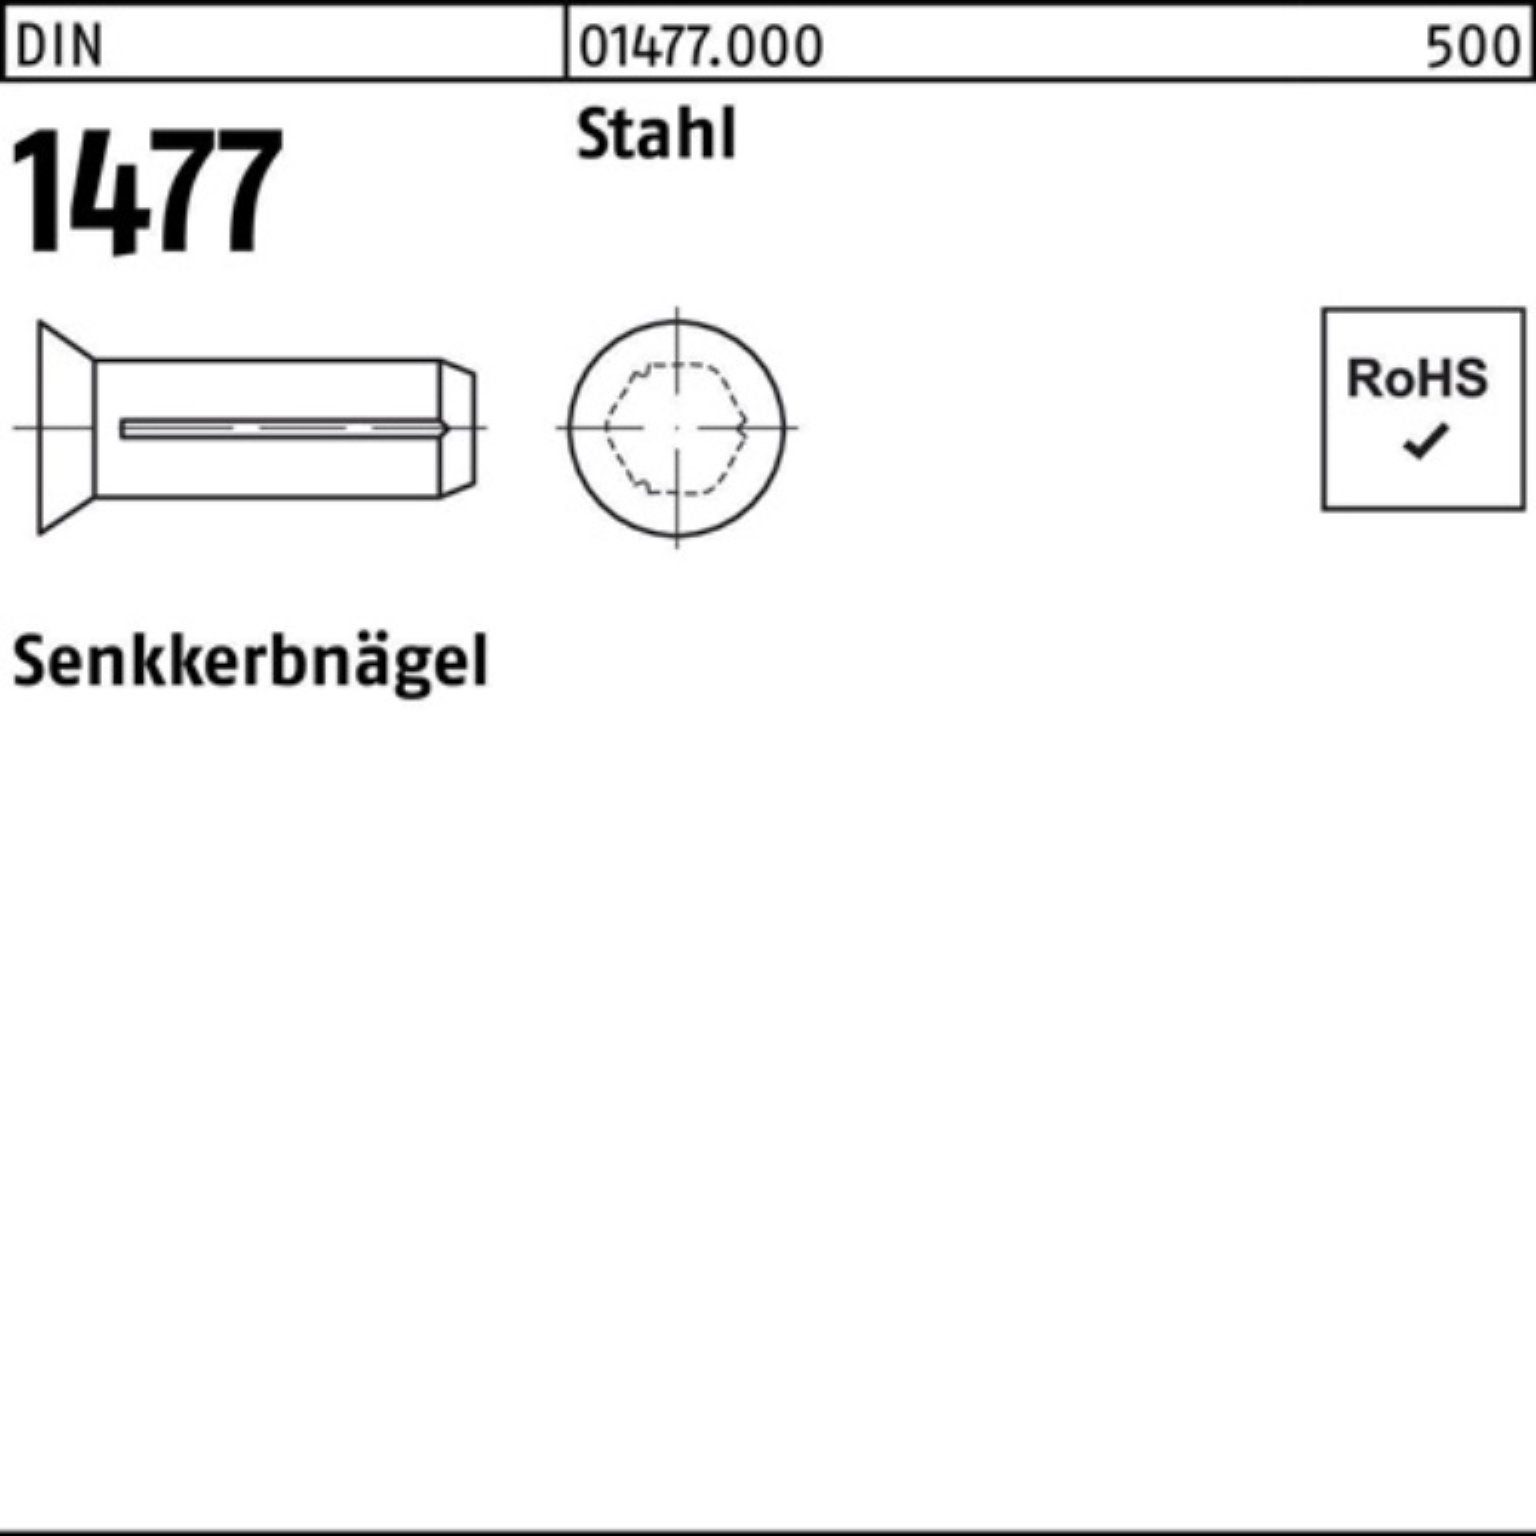 Pack Senkkerbnagel Nagel 4 1477 500 Stahl 1477 Reyher Stück Stahl 2x DIN 500er DIN